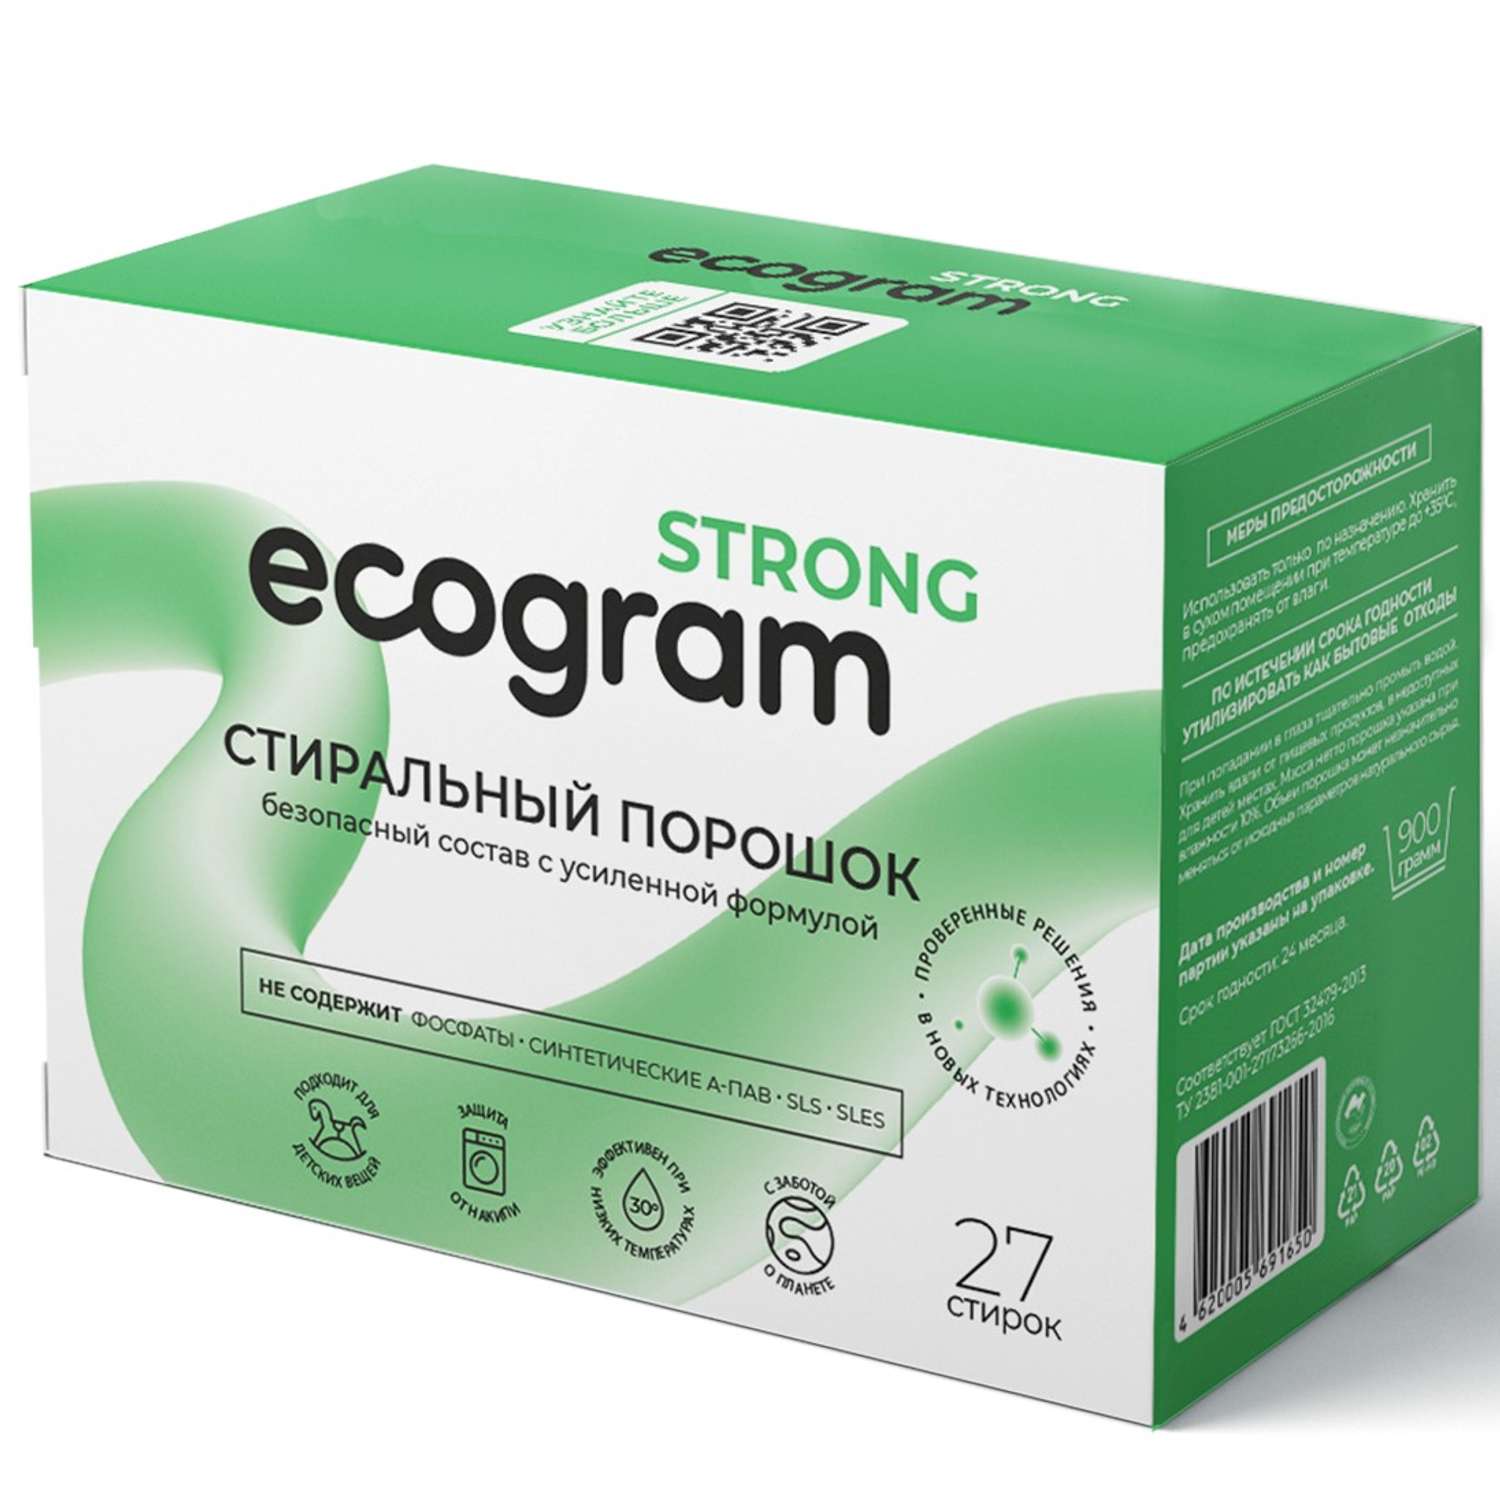 Стиральный порошок Ecogram Strong экологичный 900 г - фото 1